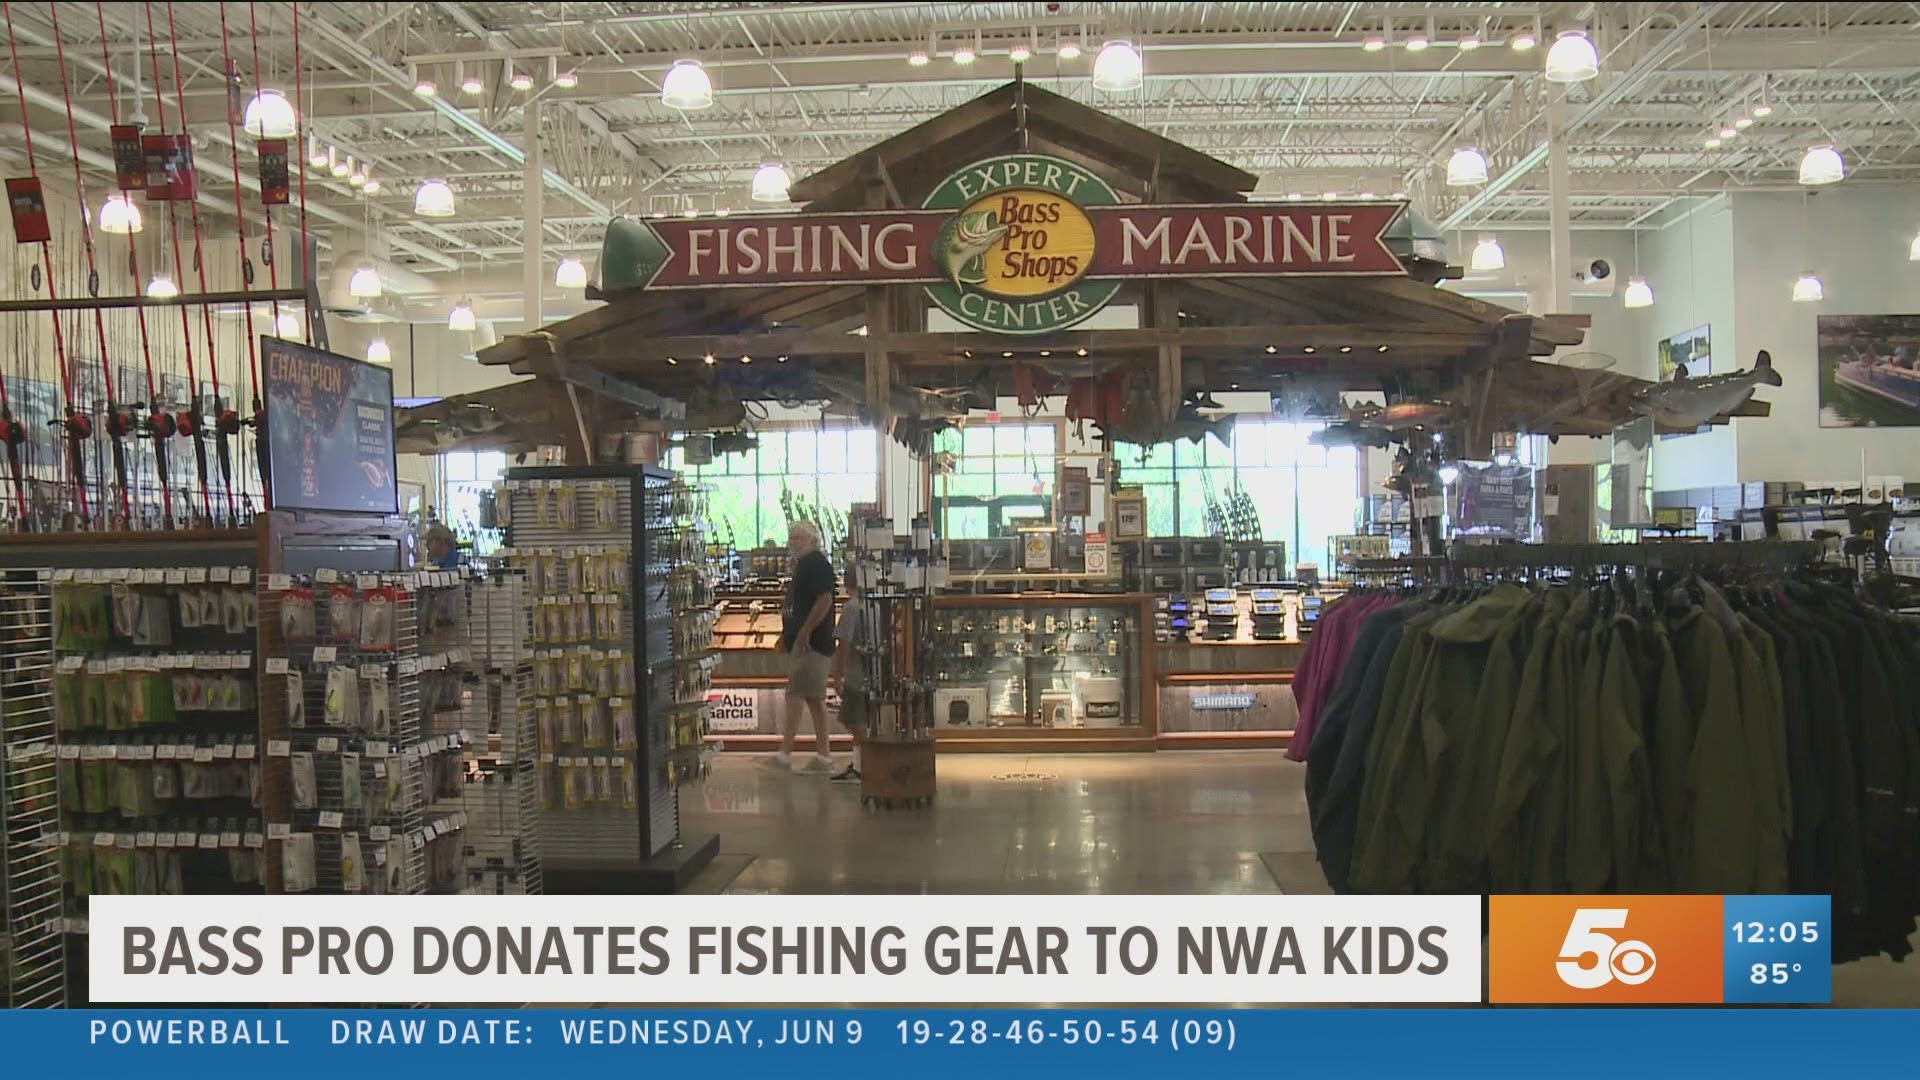 Bass Pro donates fishing gear to kids in NWA